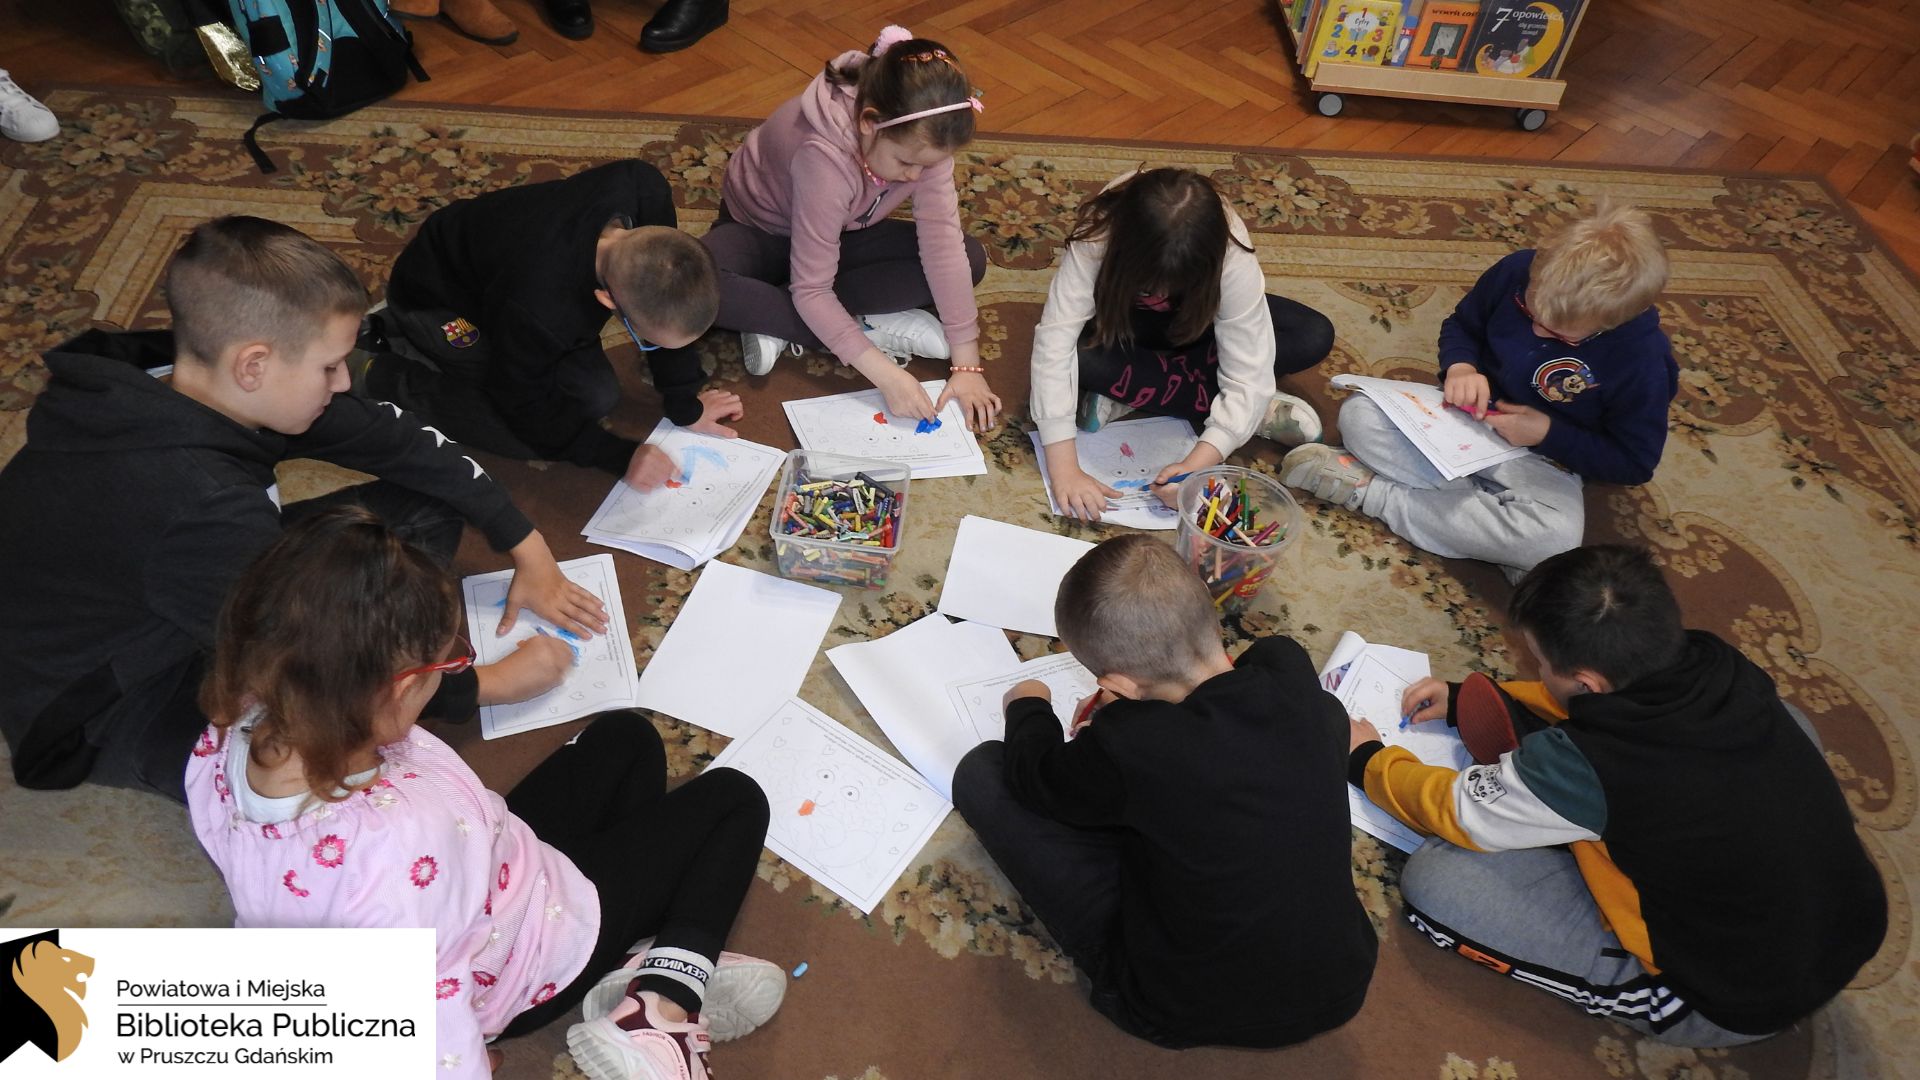 Grupa dzieci siedzi na dywanie w kole. Na środku koła stoją dwa pudełka wypełnione kredkami. Przed dziećmi leżą białe kartki A4 z szablonem do kolorowania. Dzieci wypełniają kolorowankę.